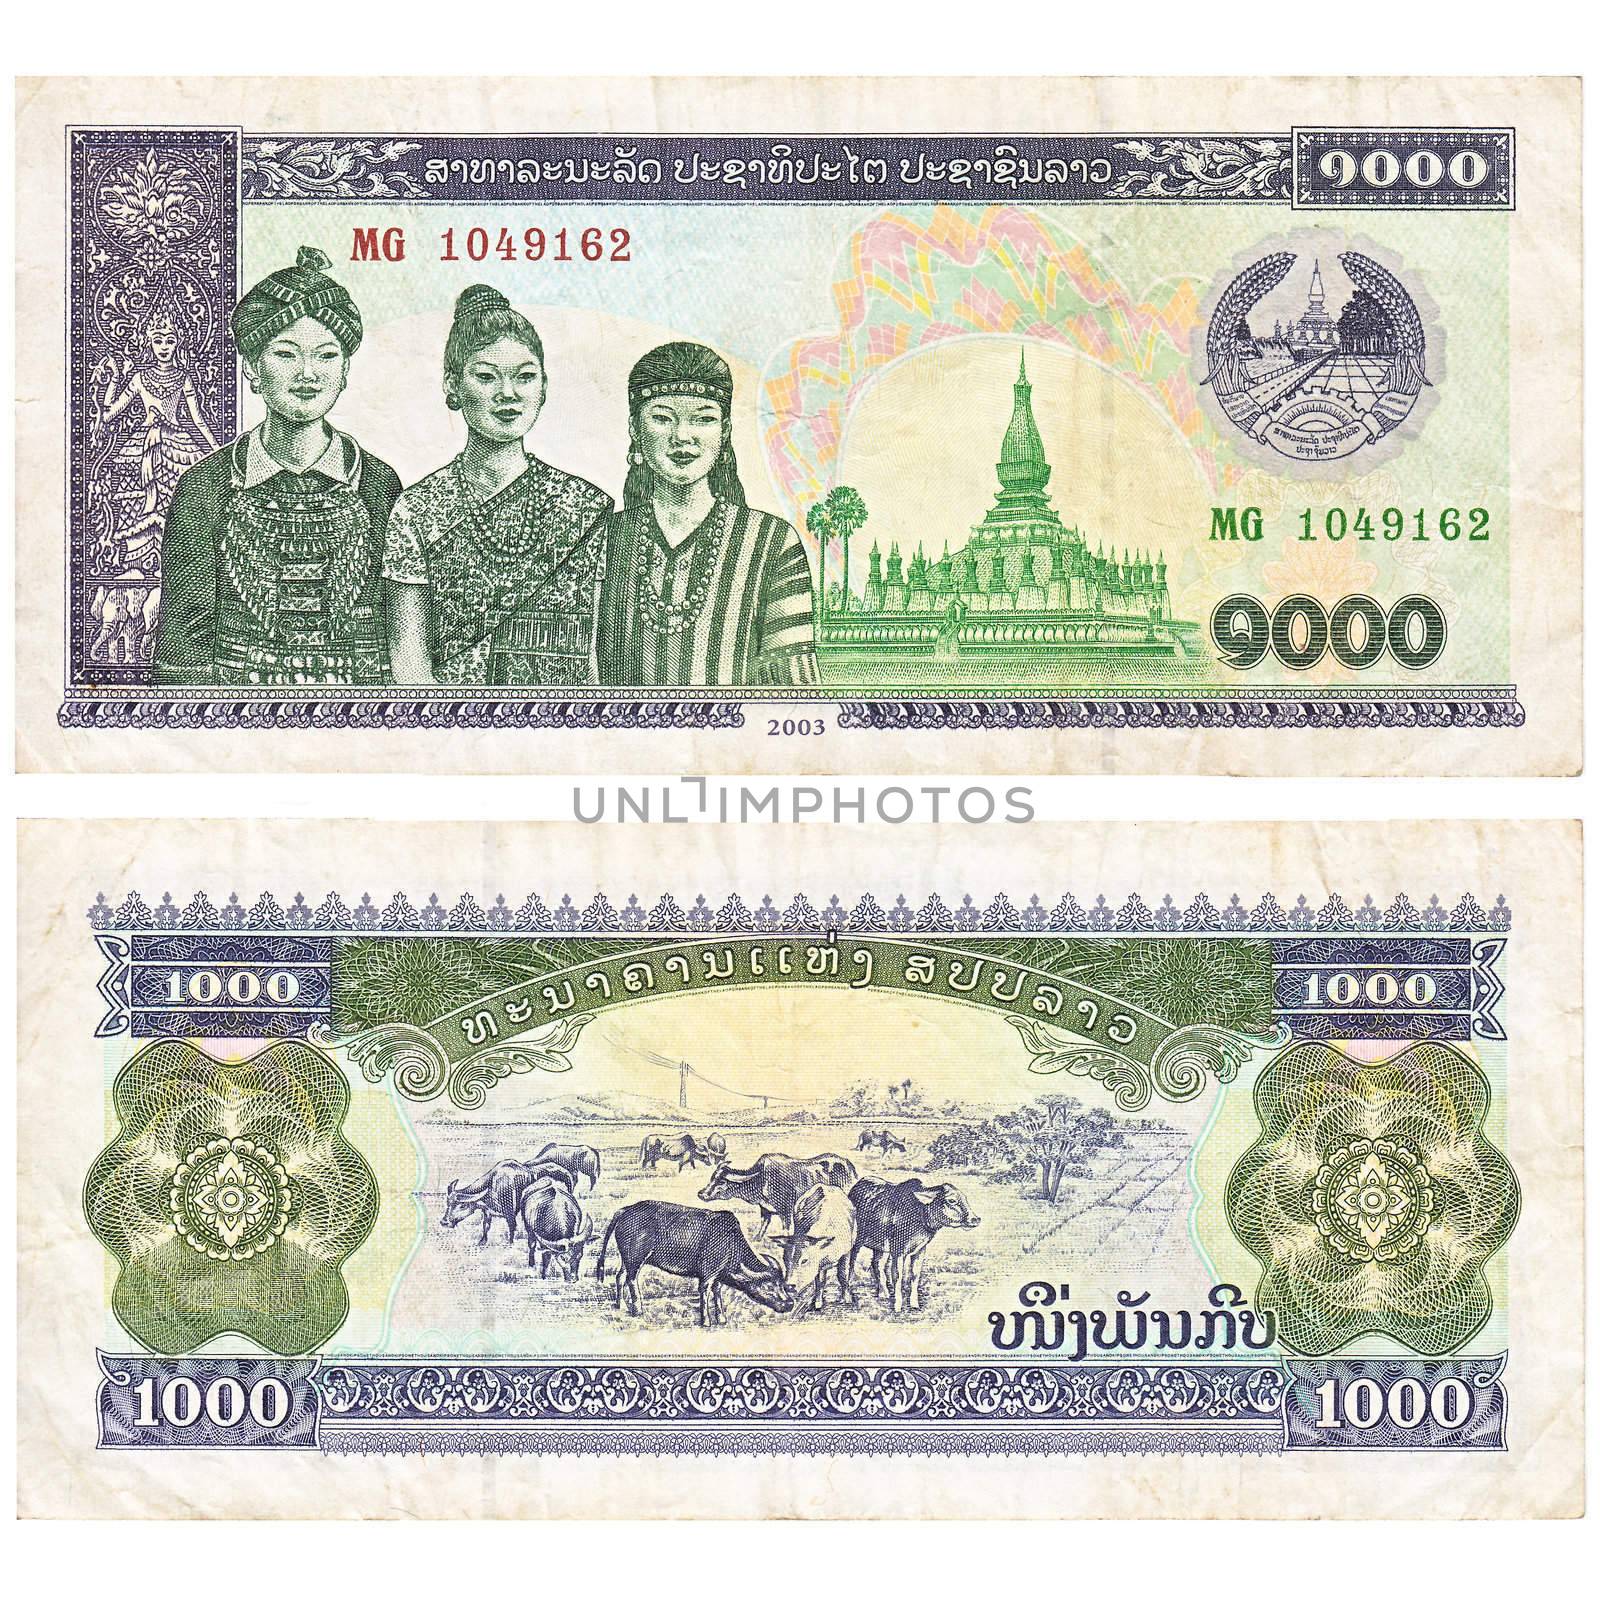 Laotian banknote by Lirch